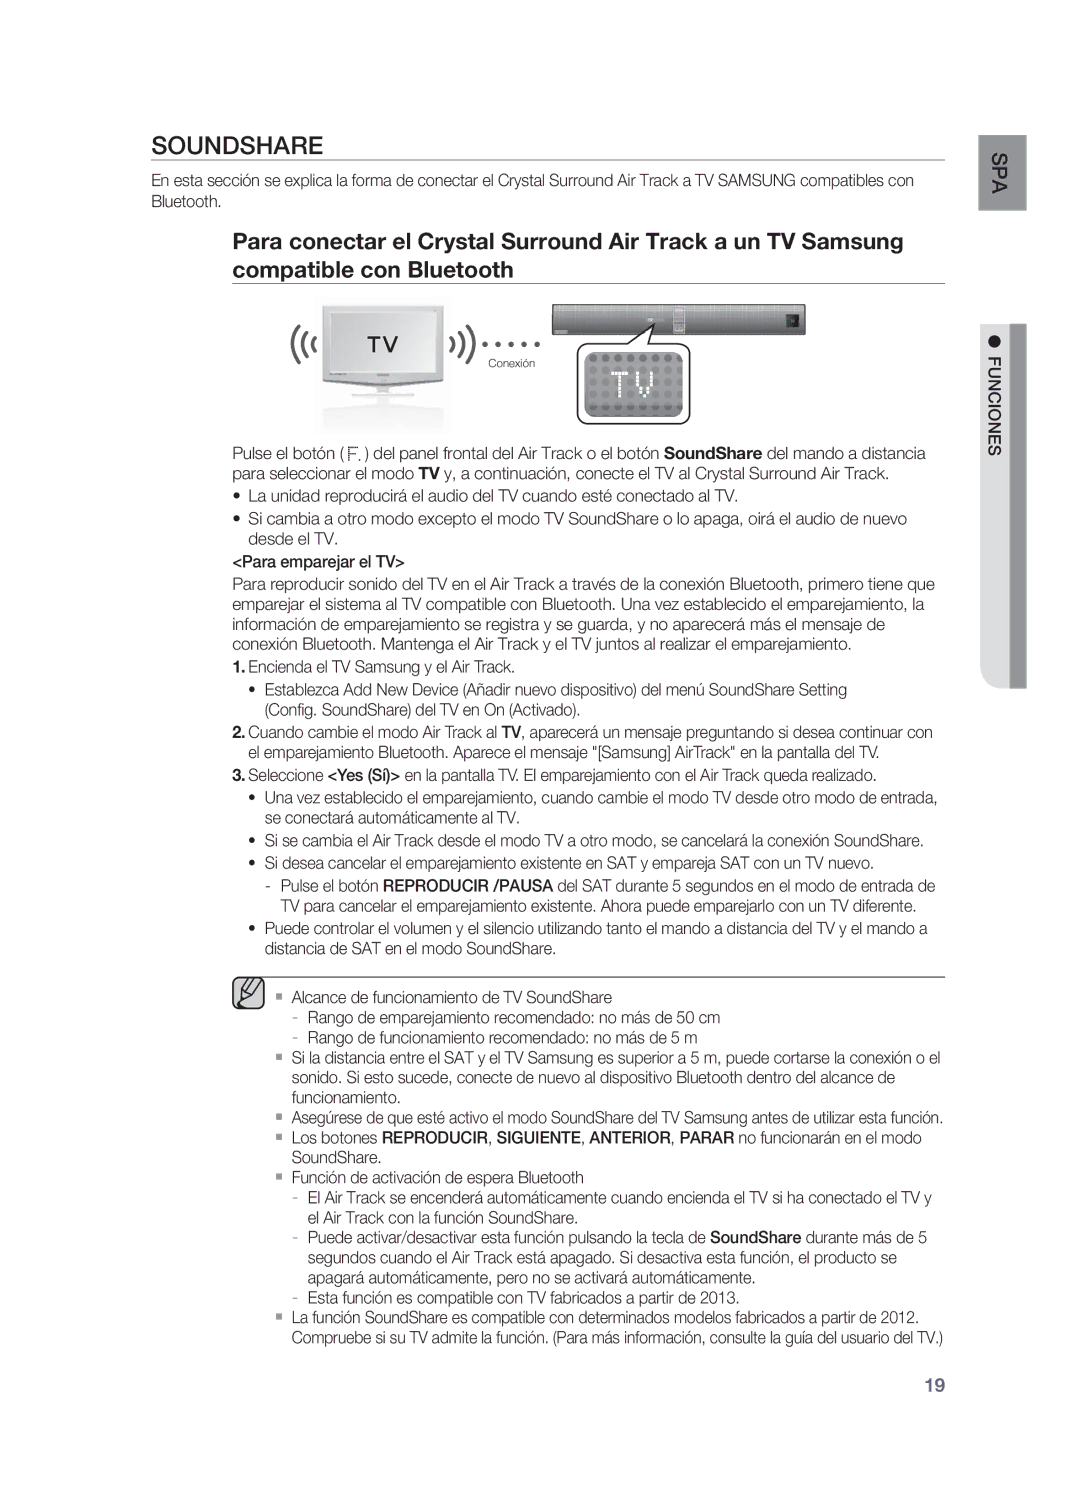 Samsung HW-F850/ZF manual Soundshare, Esta función es compatible con TV fabricados a partir de 